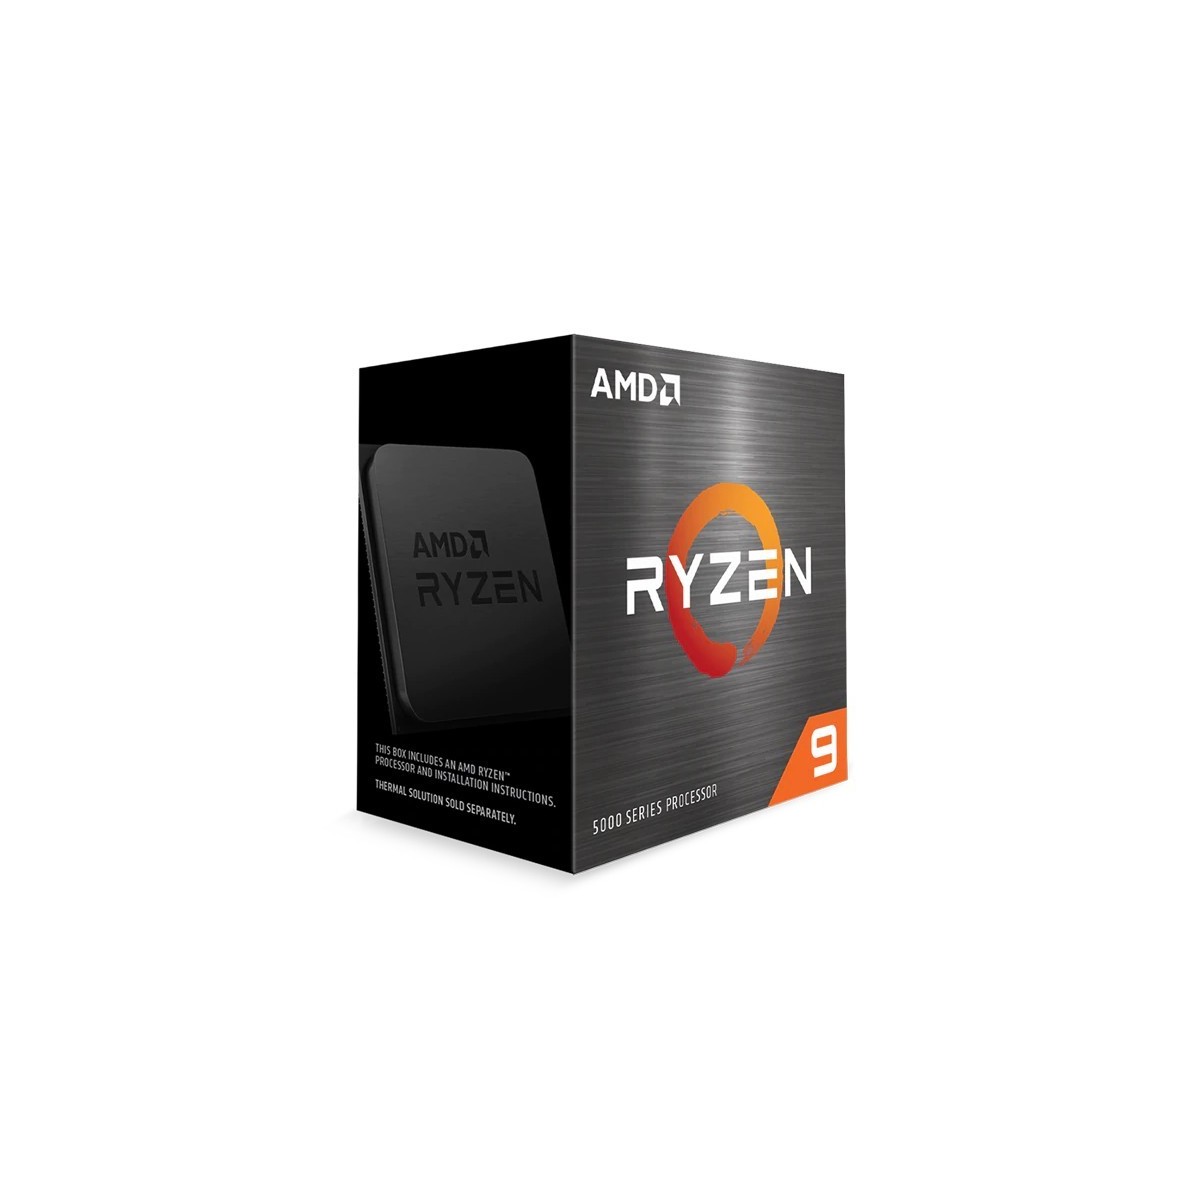 AMD Ryzen 9 5900X - AMD Ryzen 9 - Socket AM4 - PC - 7 nm - AMD - 3.7 GHz